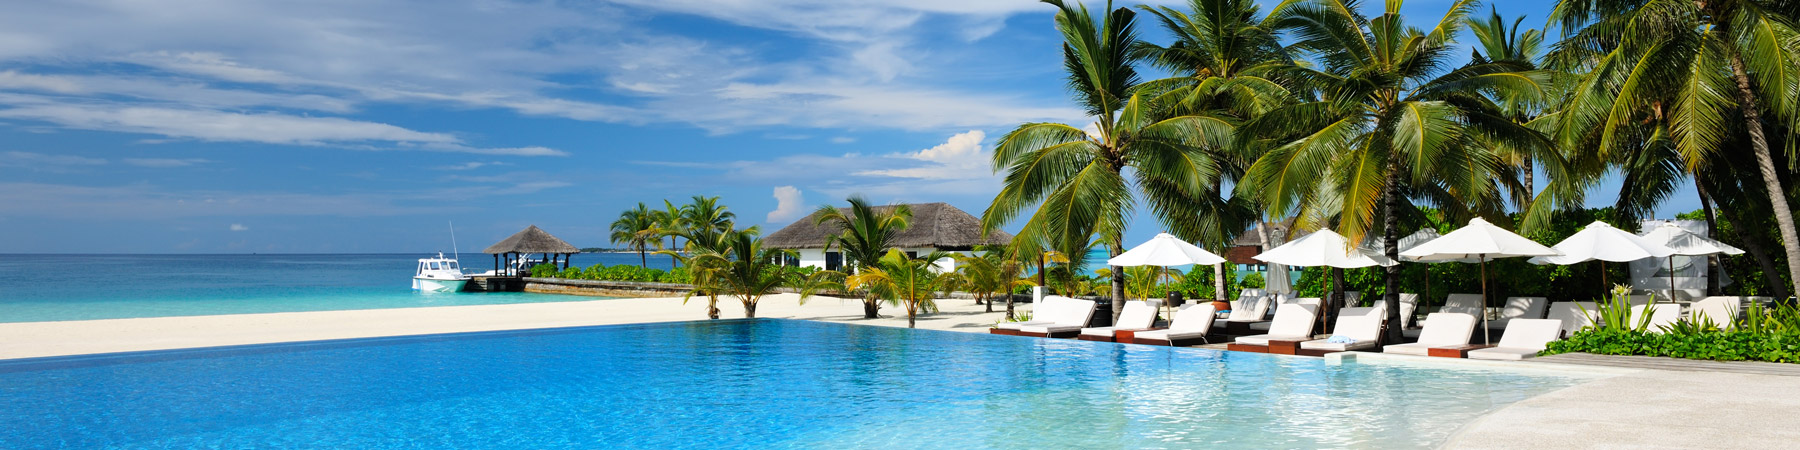 Belize Resort Villas Villa Collection